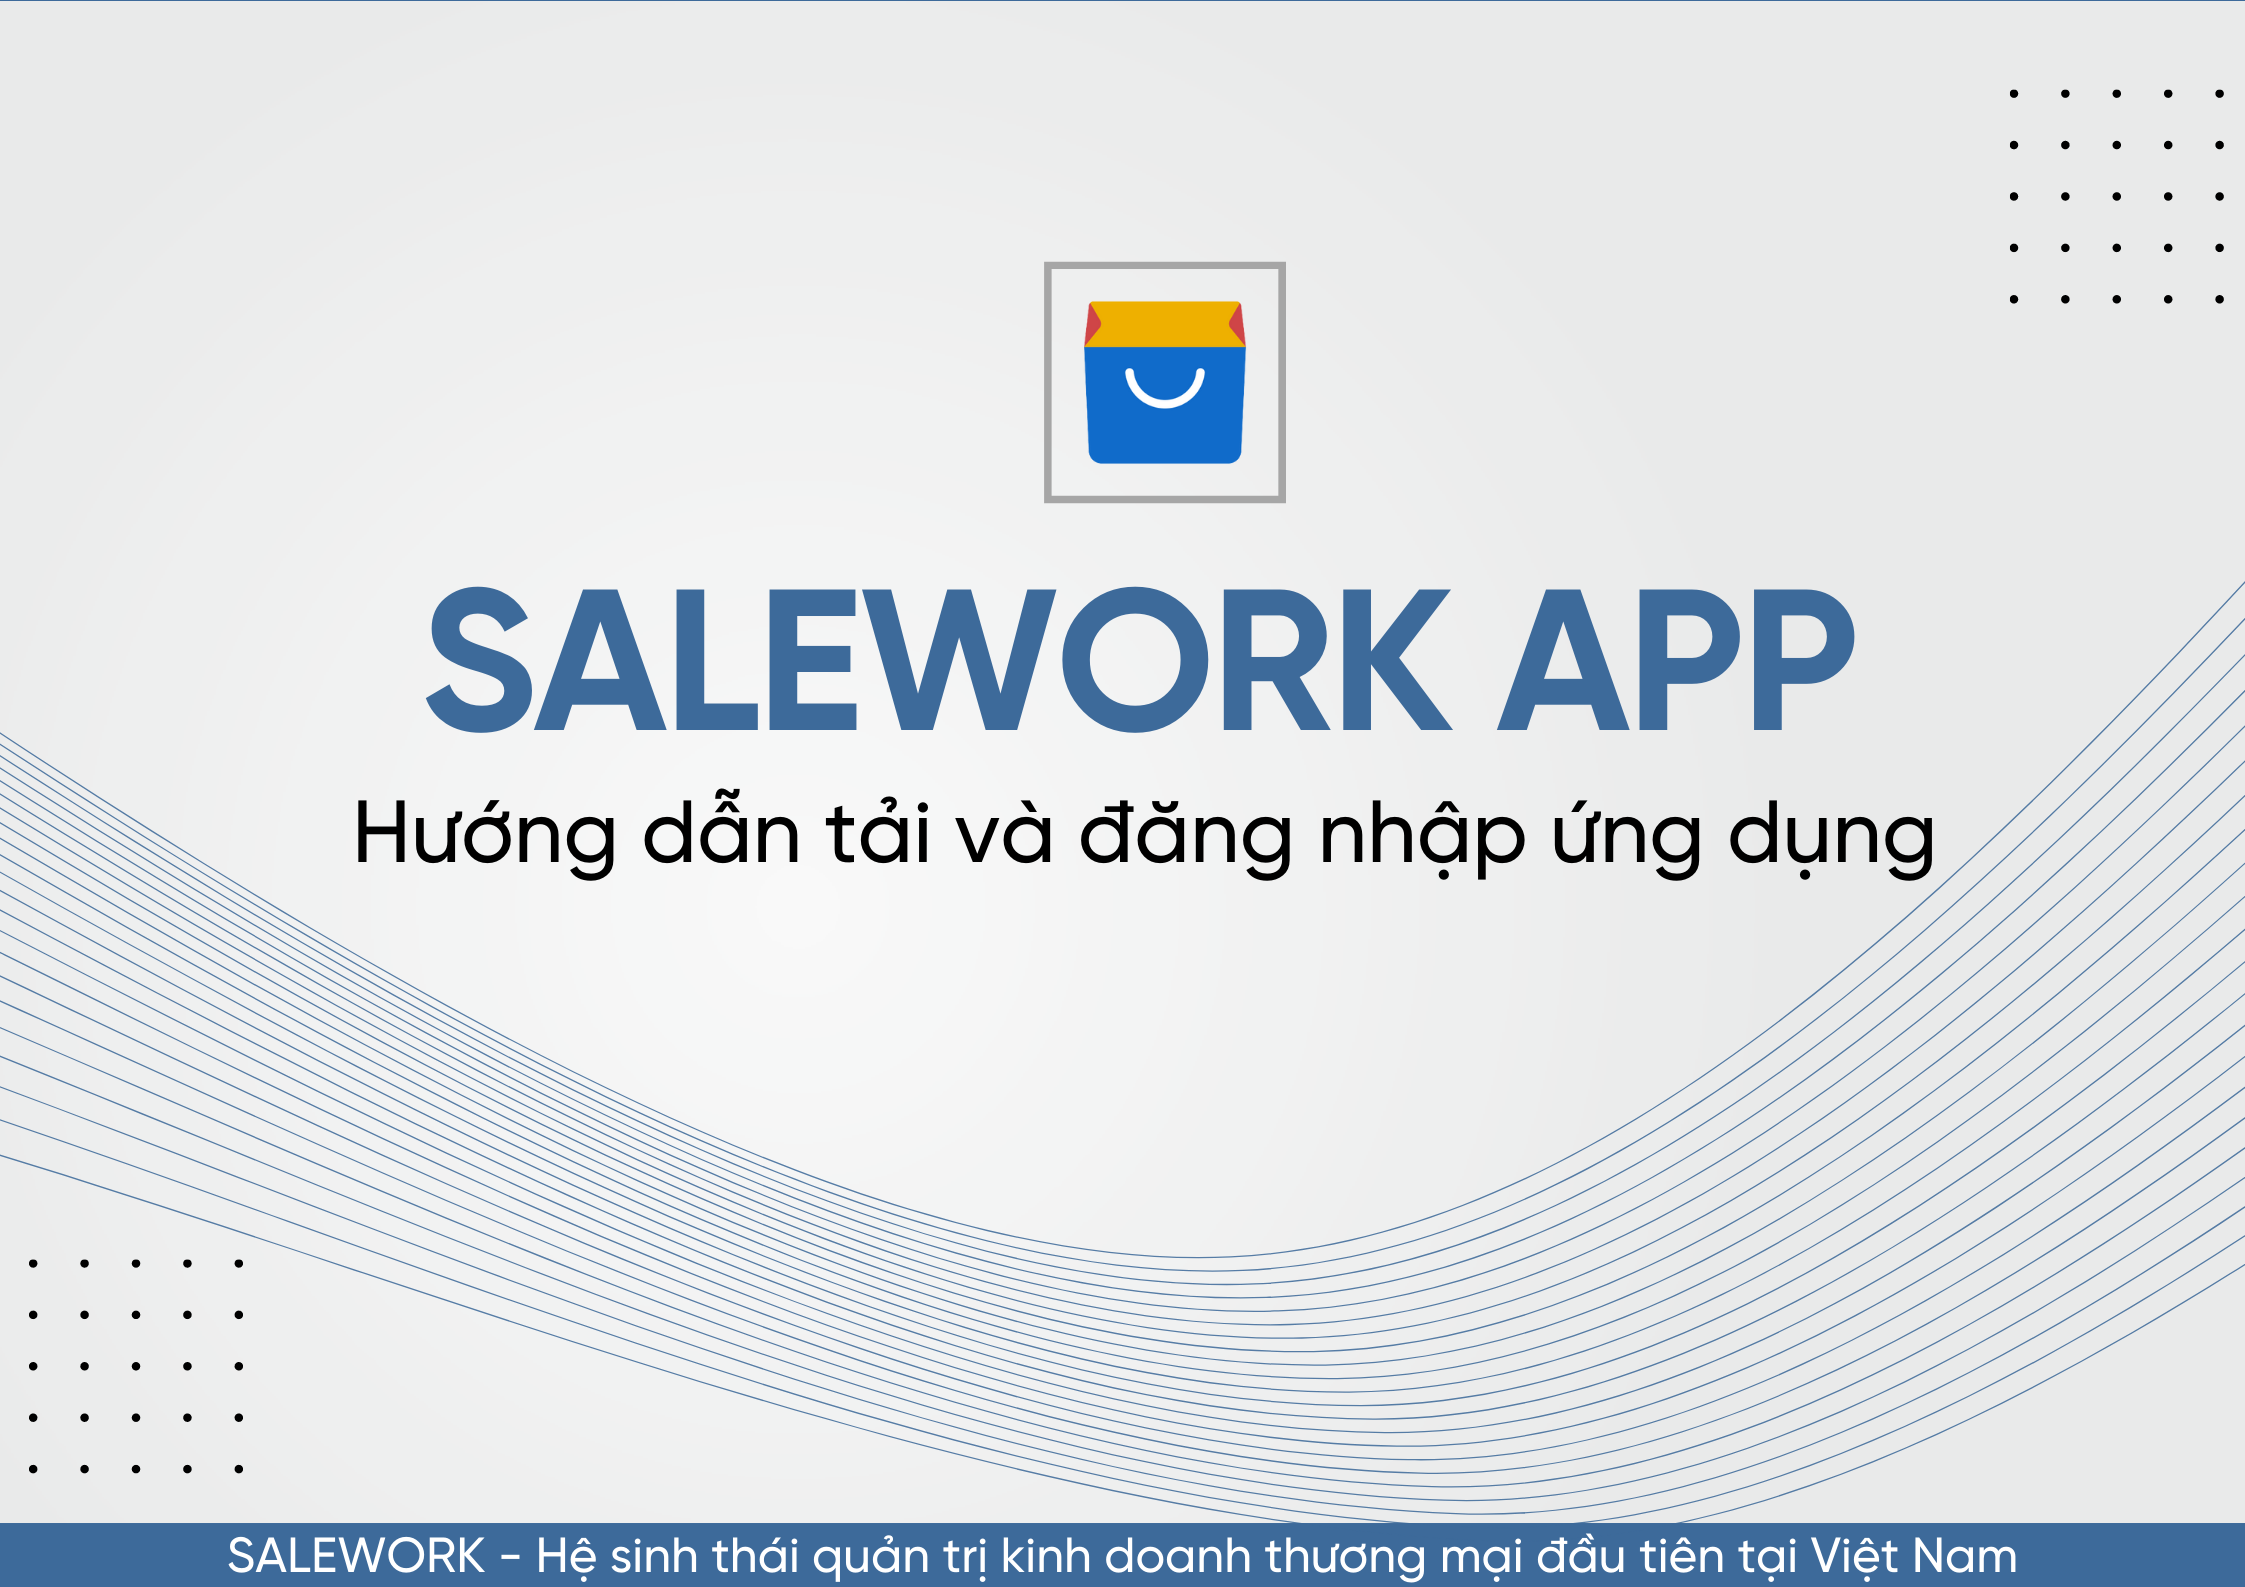 Hướng dẫn tải và đăng nhập ứng dụng Salework trên nền tảng di động - 94